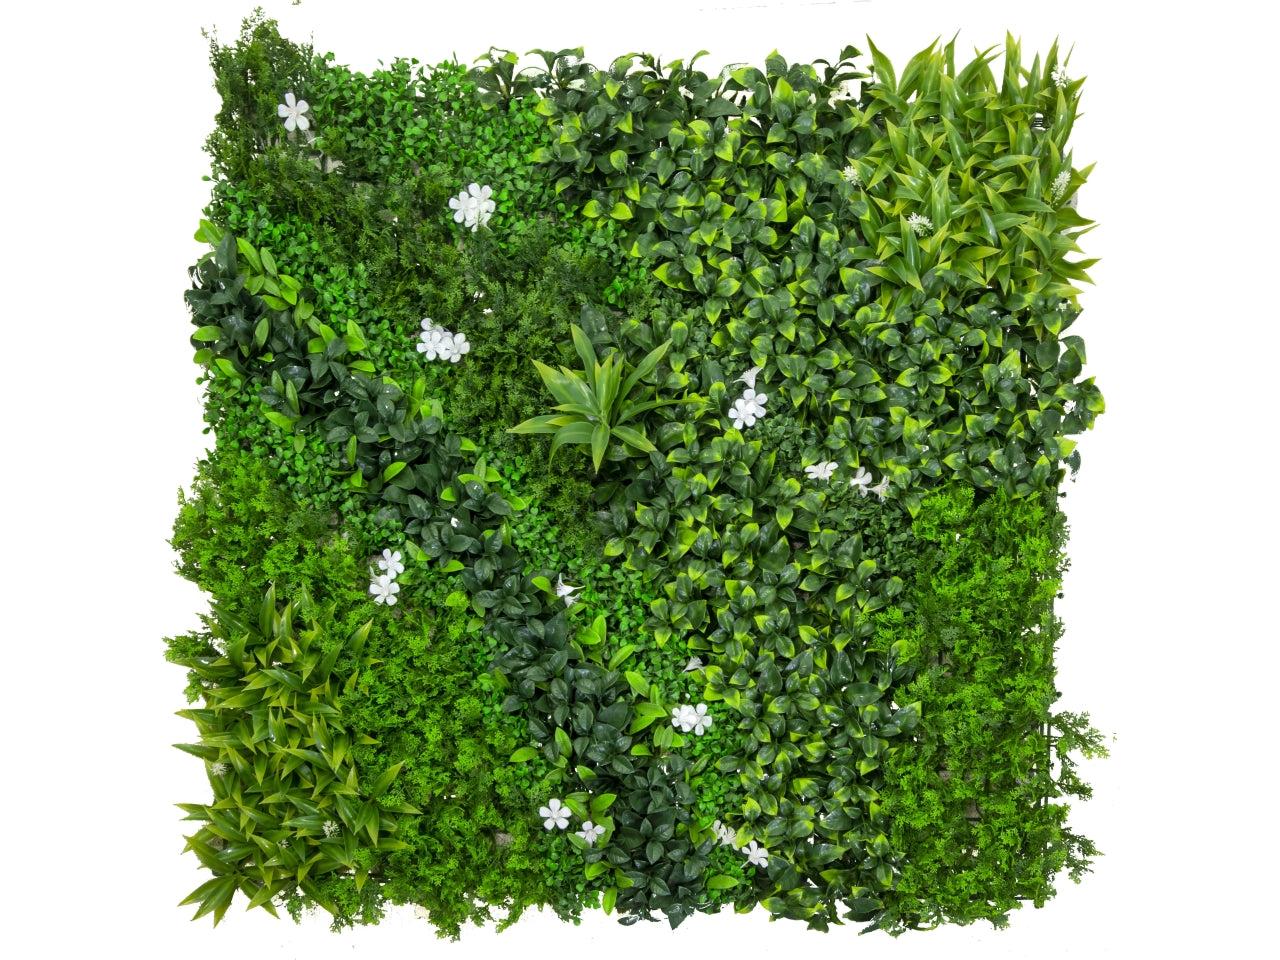 Pannello lichene artficiale decorazione da parete tropicale verde, effetto naturale, facile applicazione - 100x100cm - Vacchetti